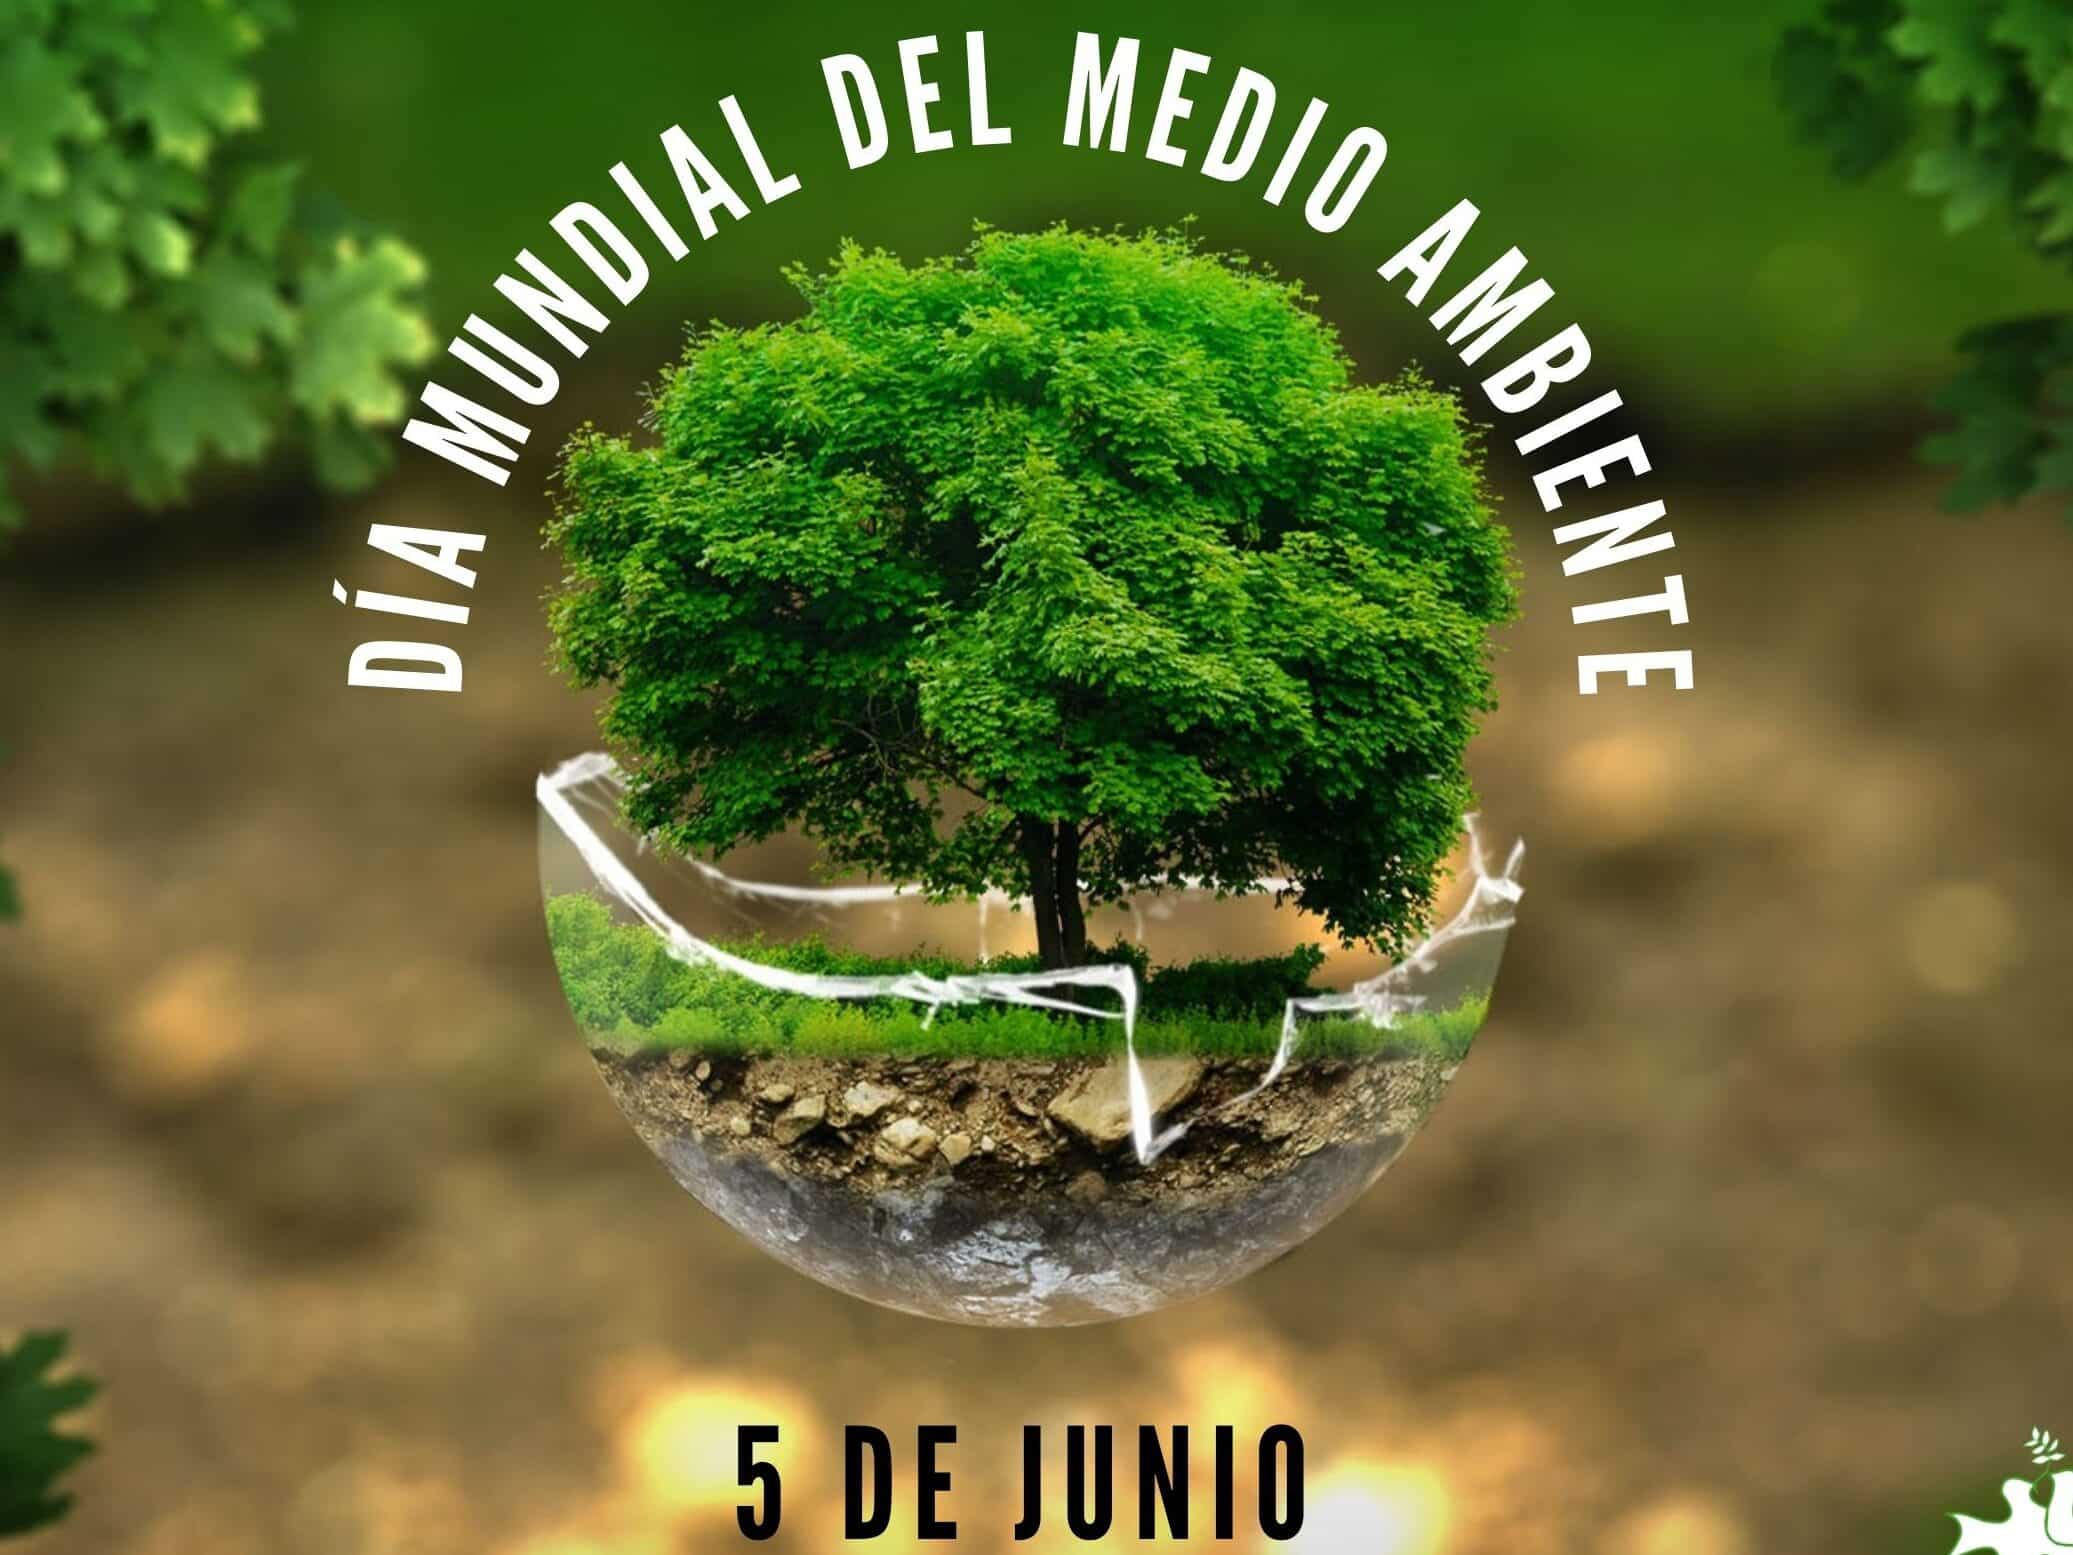 dia mundial del medio ambiente 5 de junio